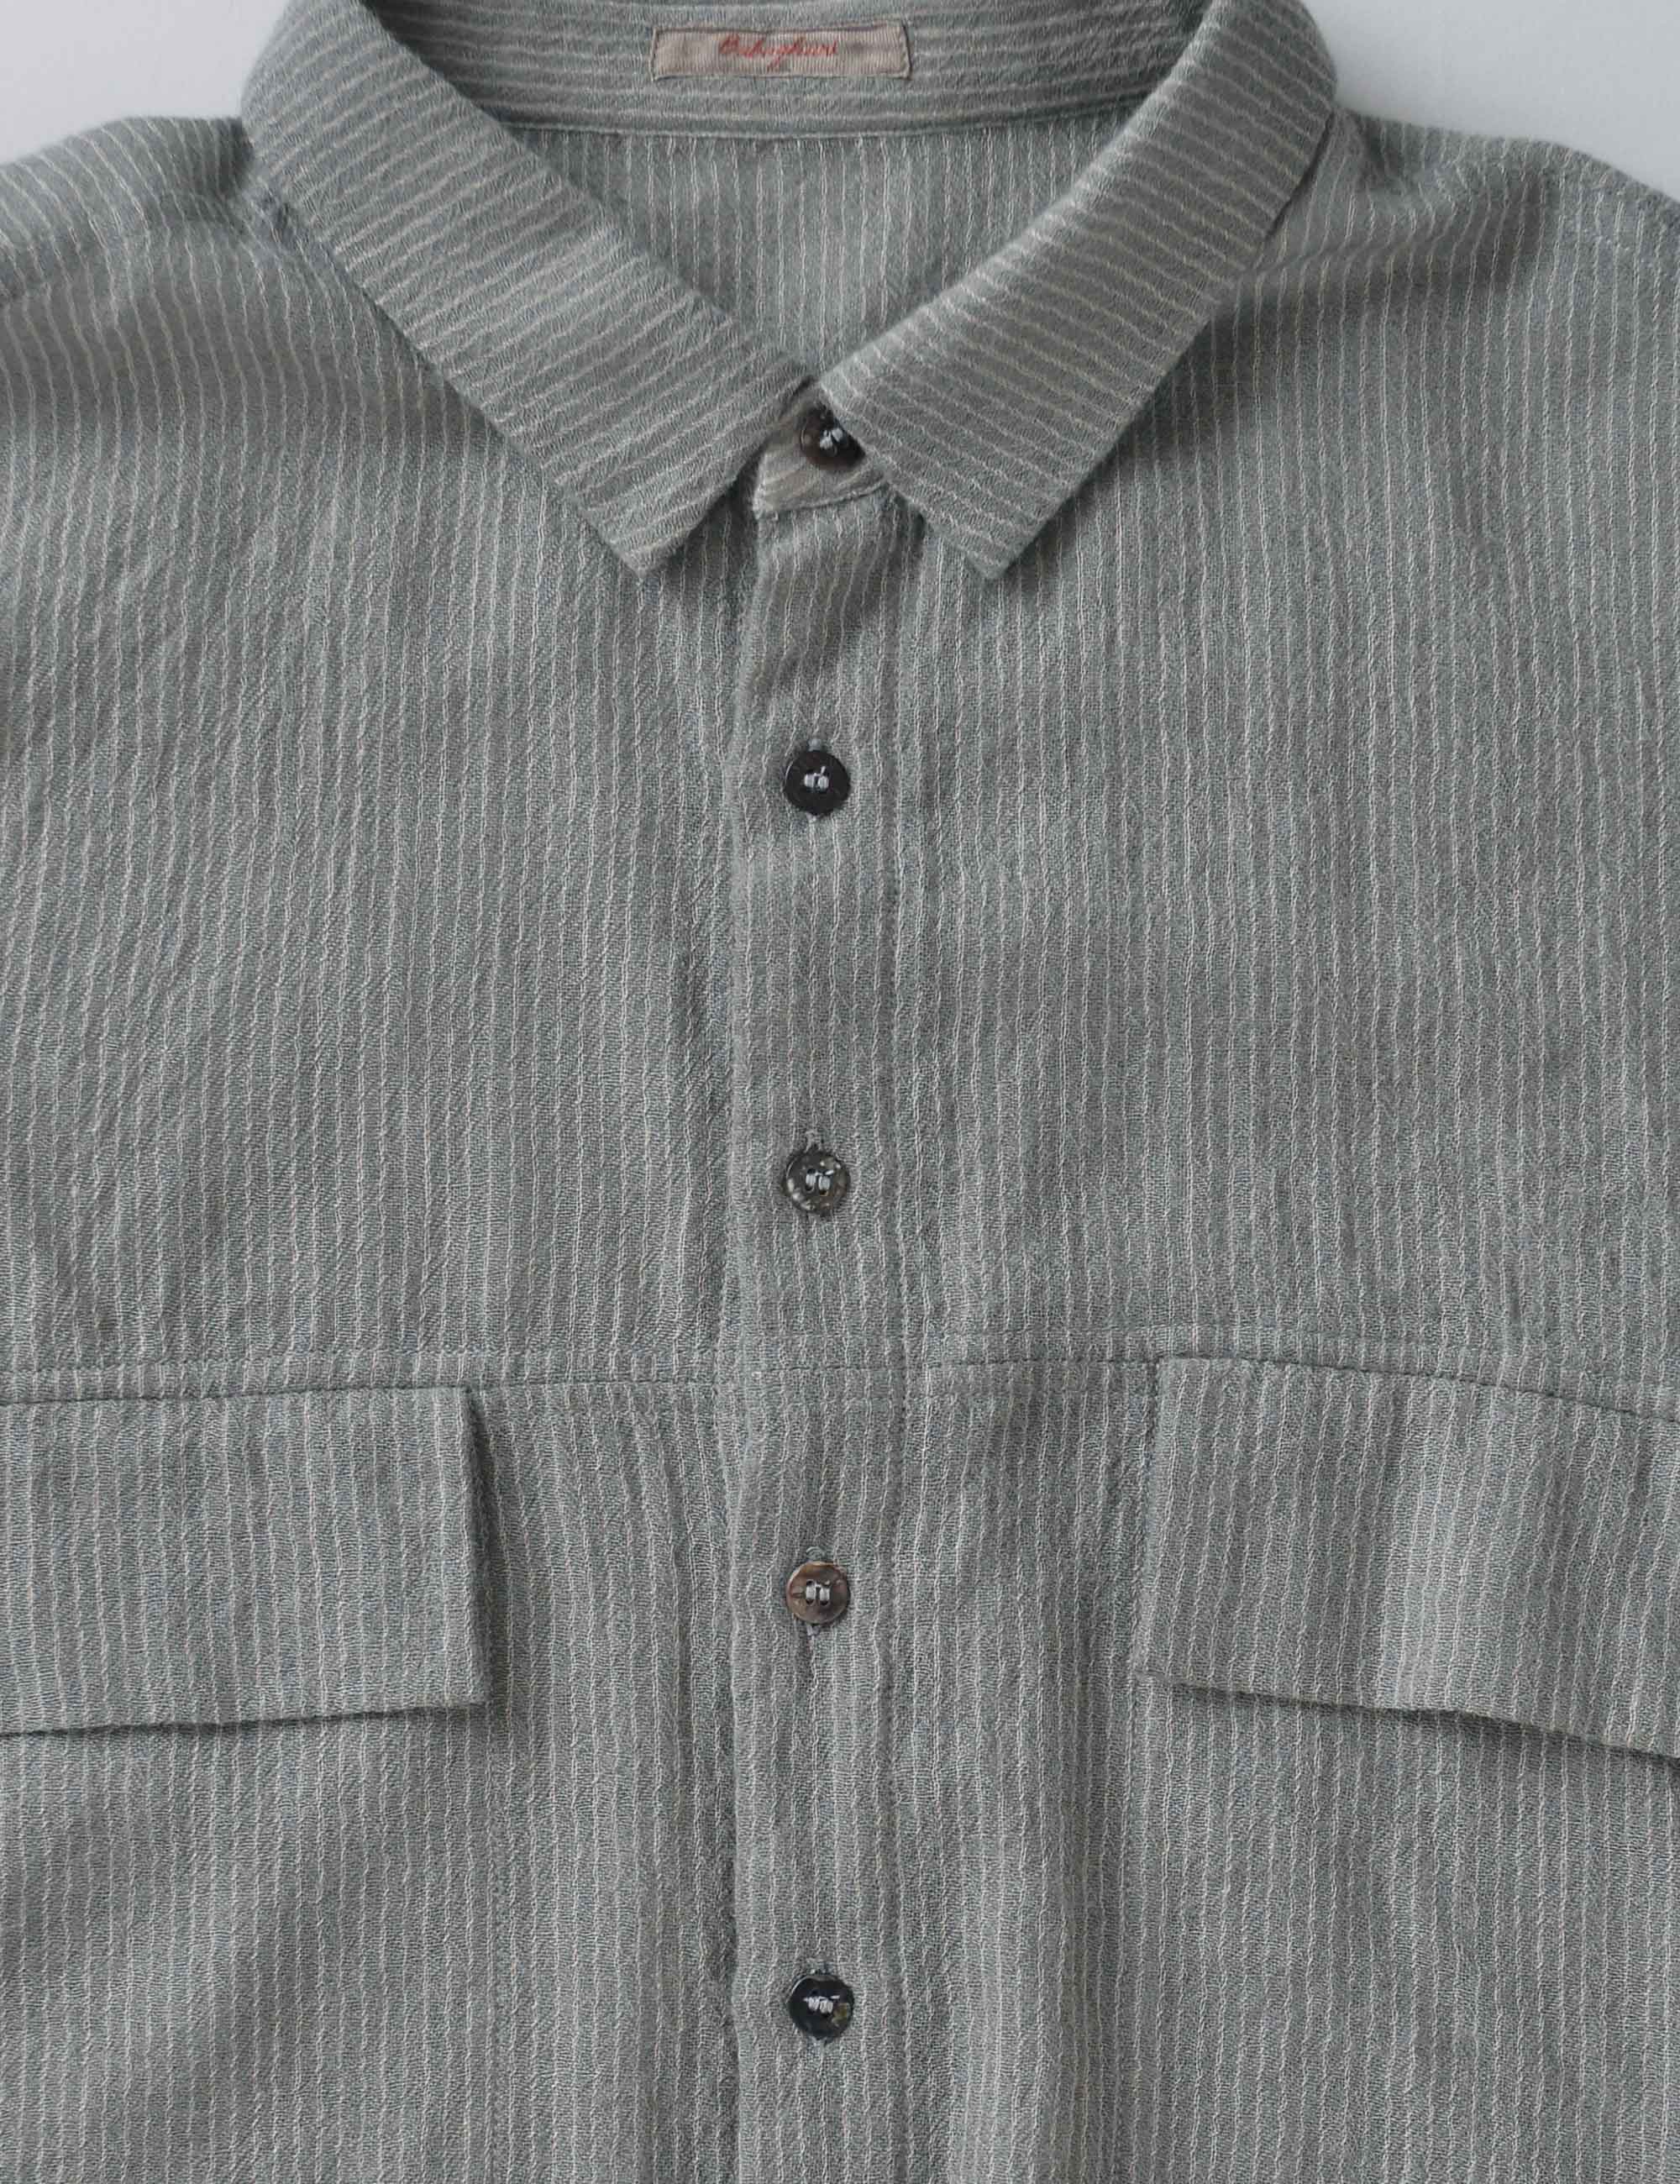 ウール薄手ストライプのメンズシャツ / ババグーリ